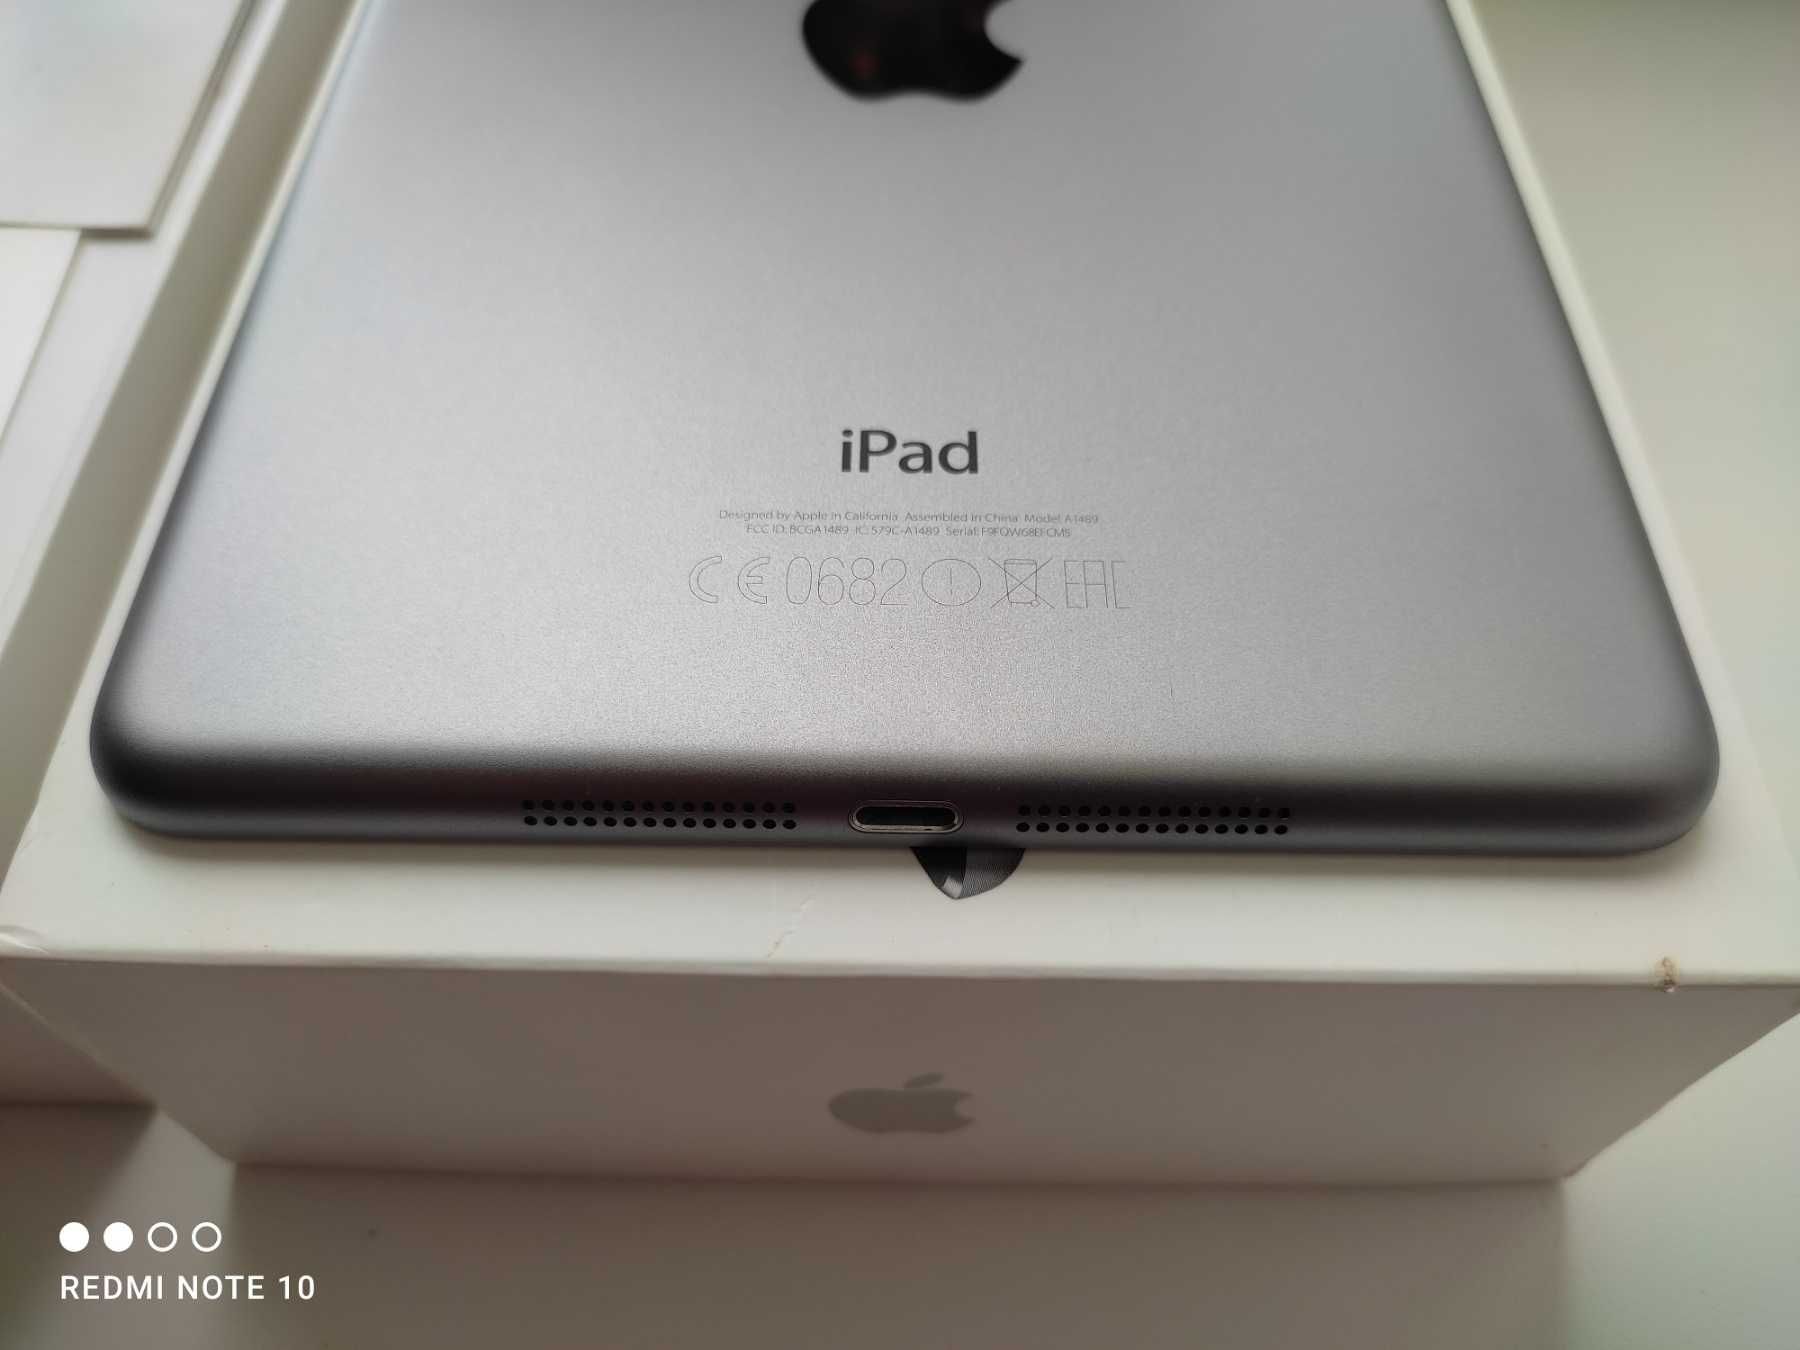 Apple A1489 iPad mini Retina display Wi-Fi 16GB Space Gray